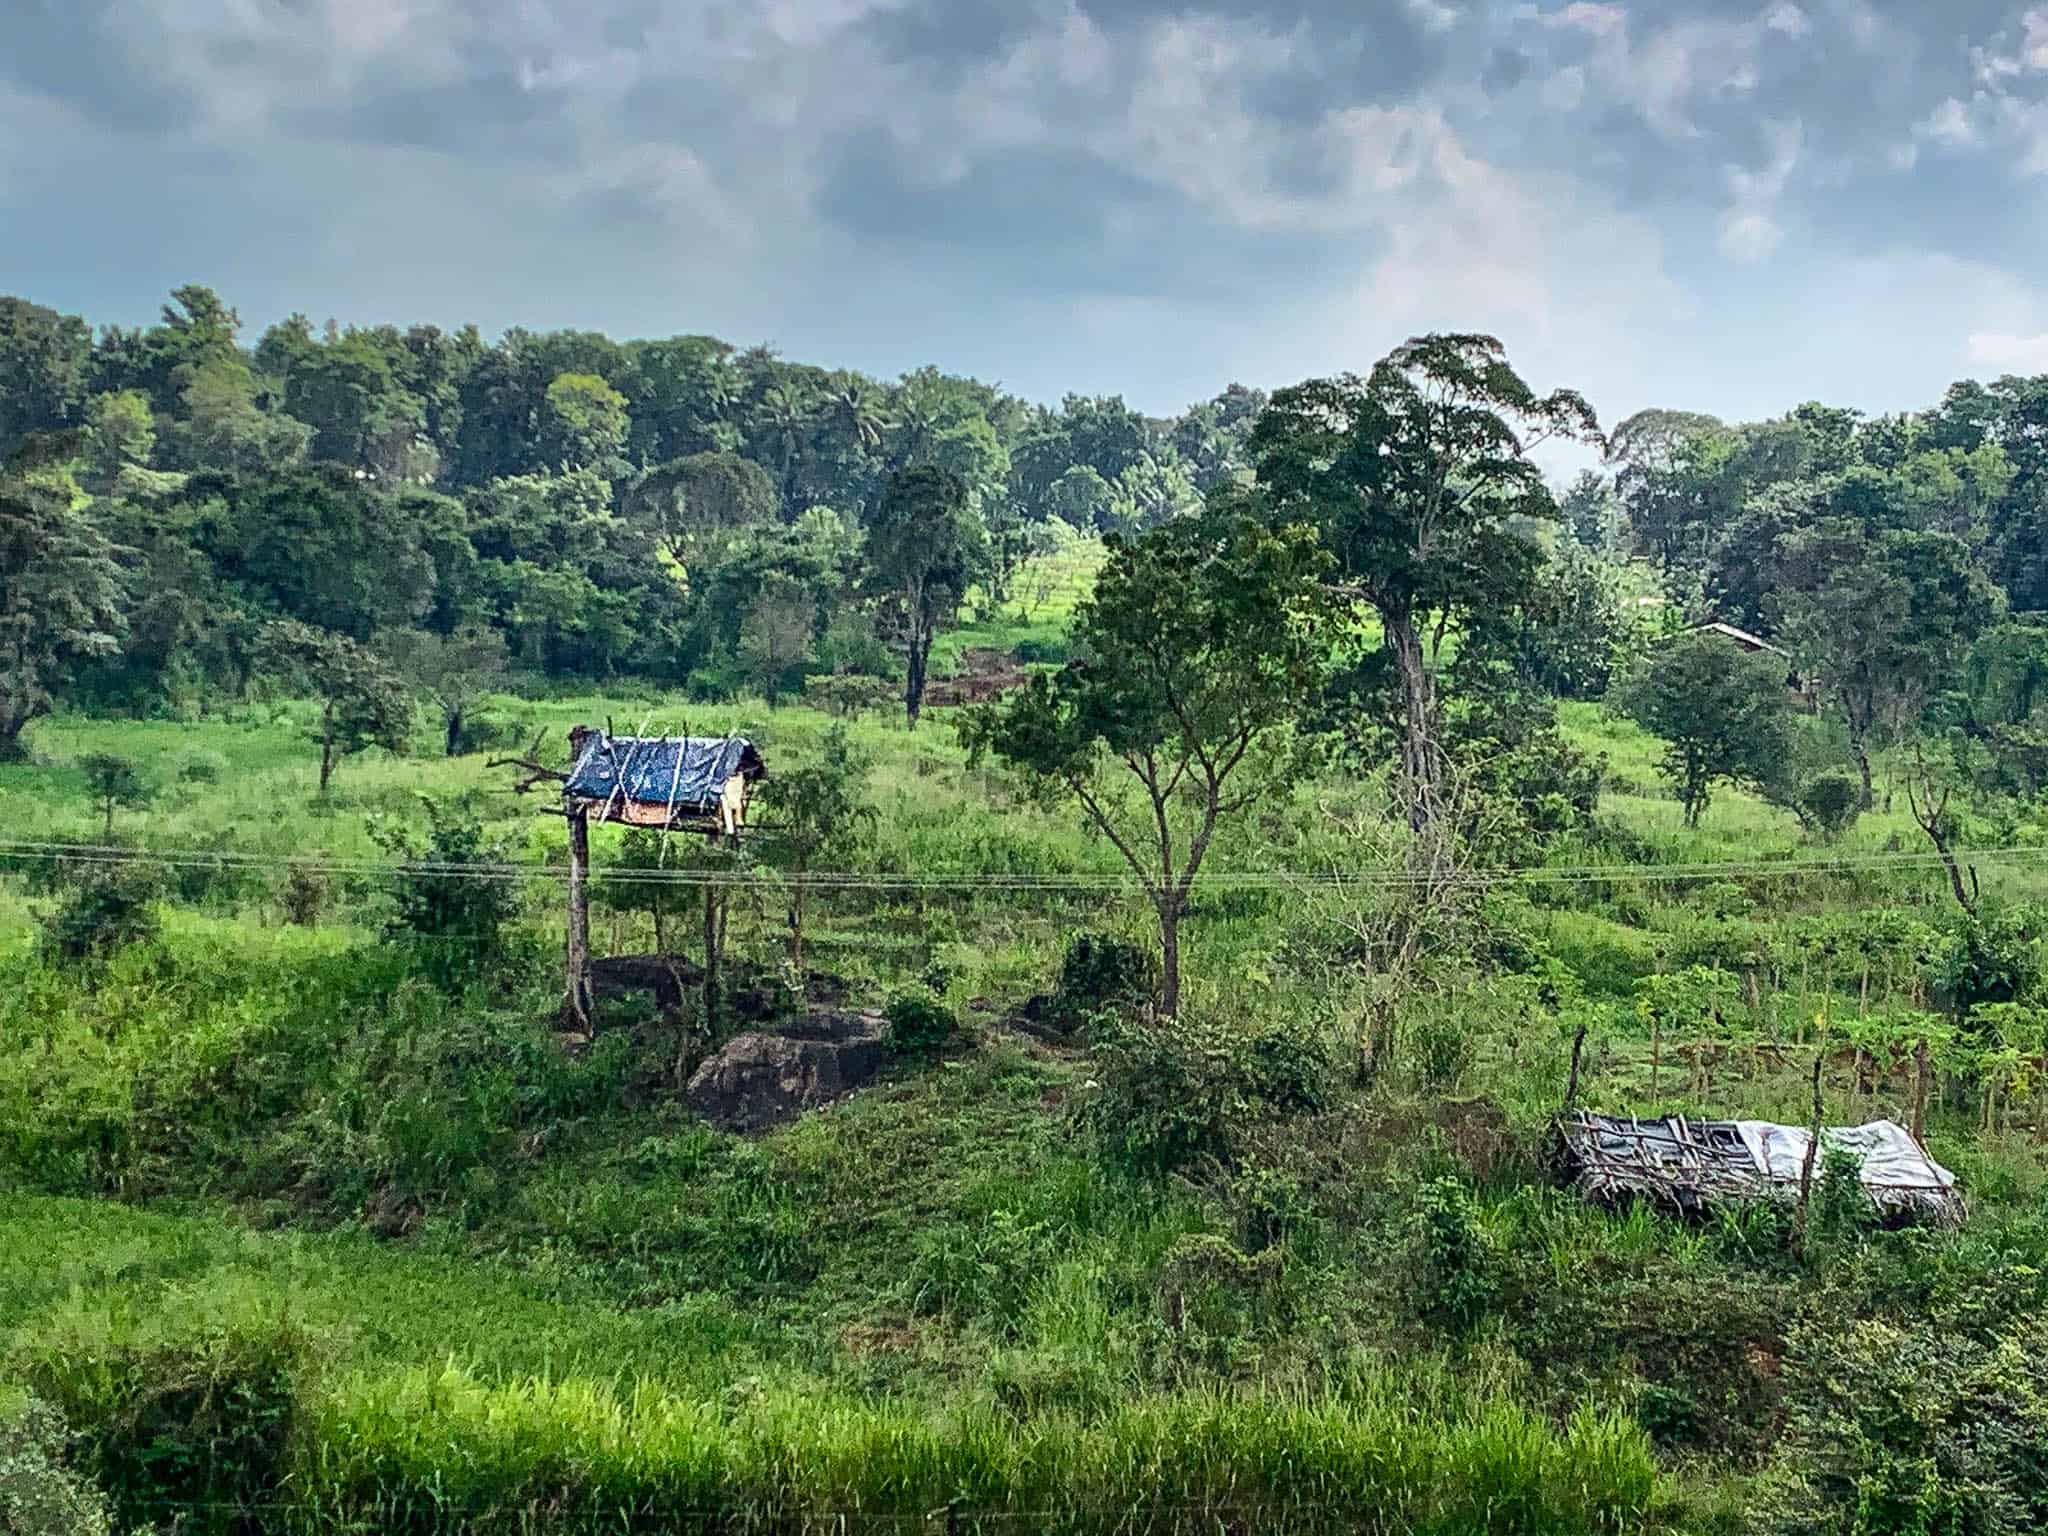 Sri Lanka agricultural landscape